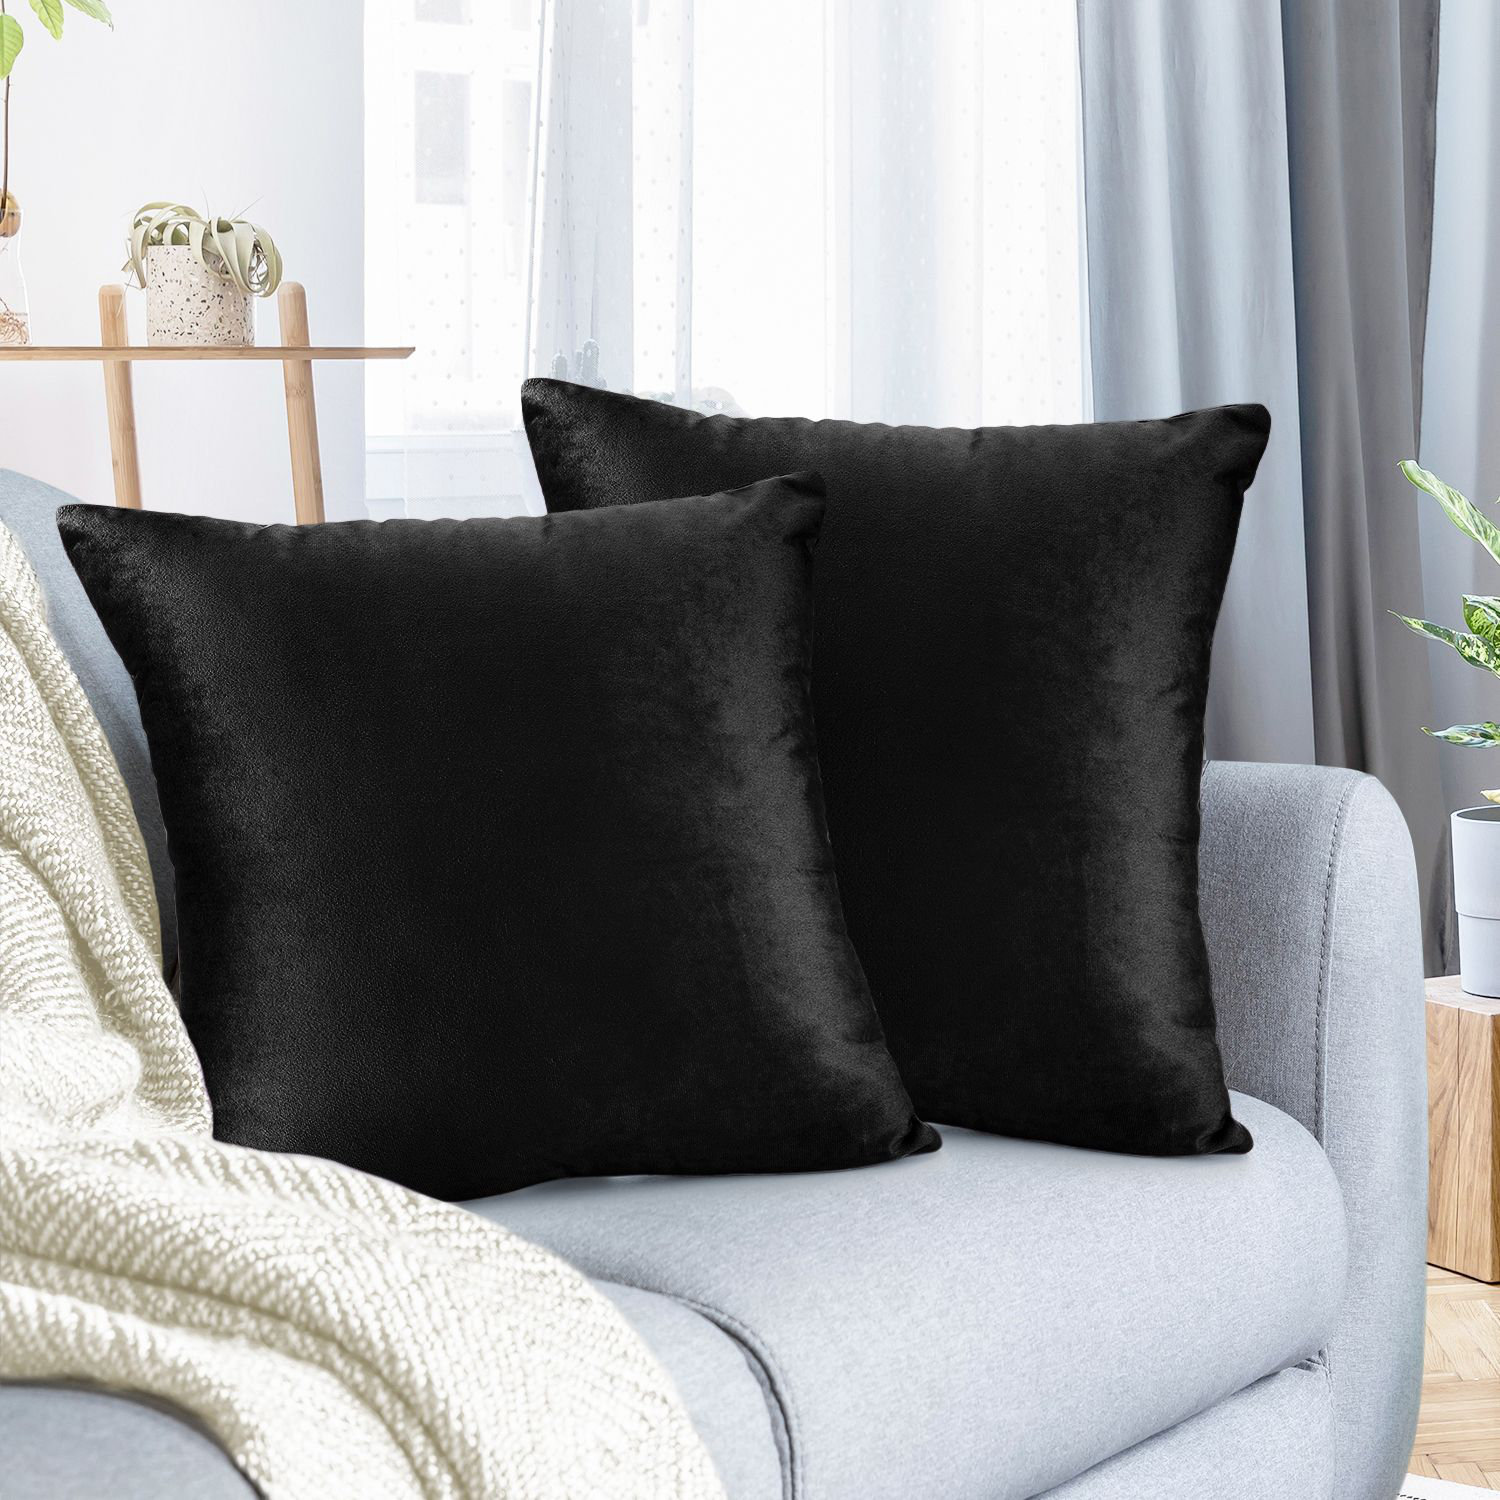 BOHO Throw Pillow Home Decor Cushion Covers 20"~18" Set of 2 Black & Cream 